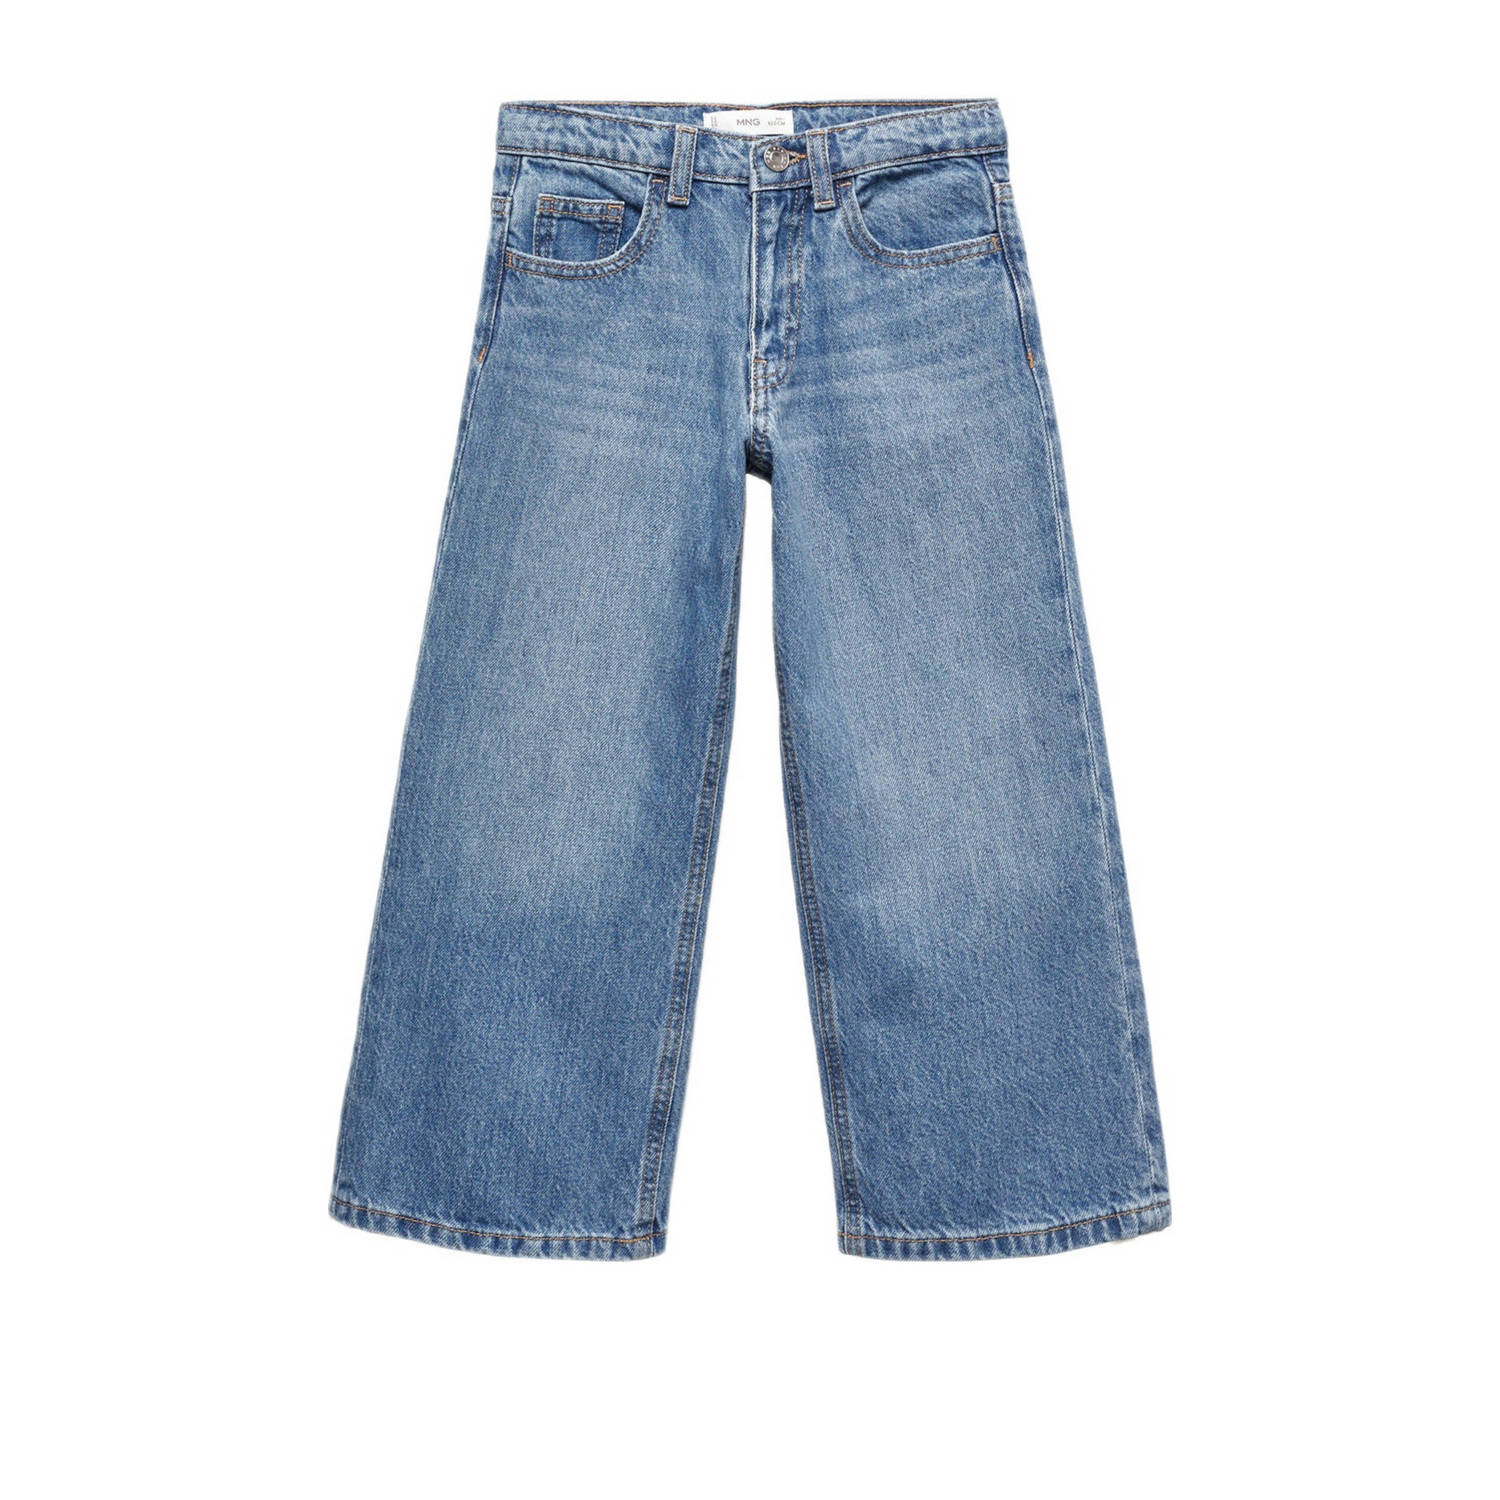 Mango Kids wide leg jeans changeant blauw